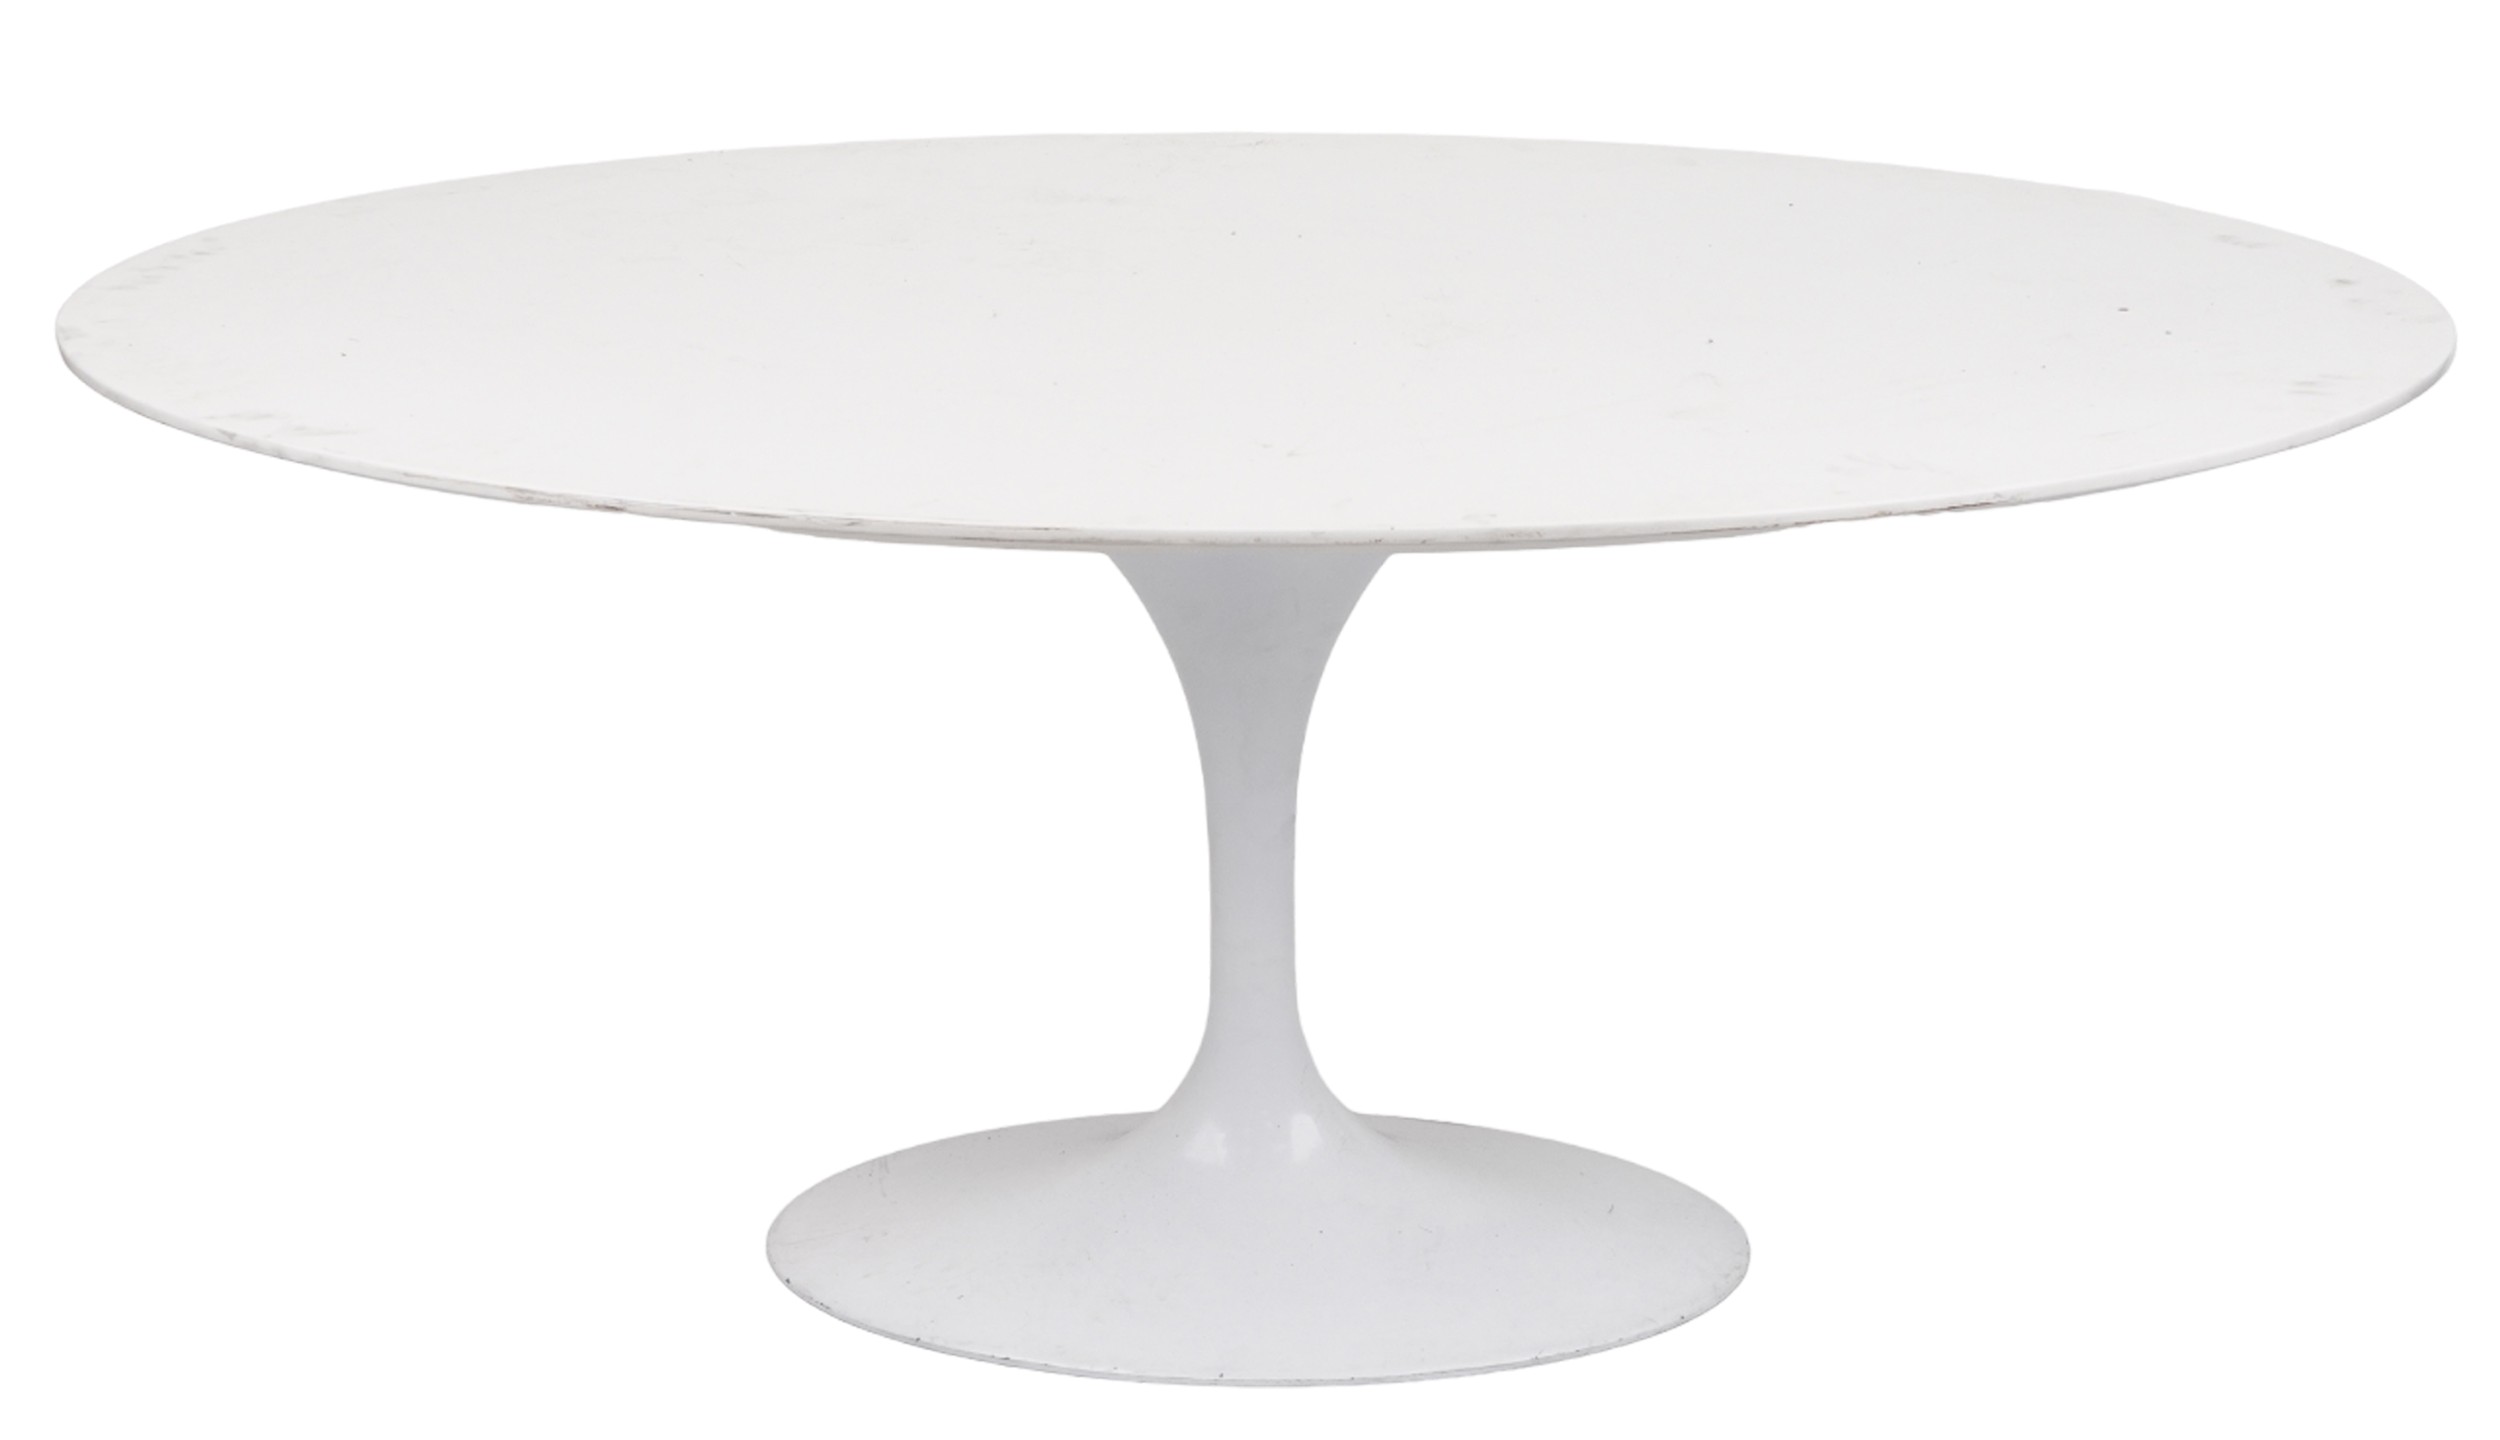 Eero Saarinen design contemporary tulip dining table, 75cm H x 170cm W x 110cm D - Image 3 of 3